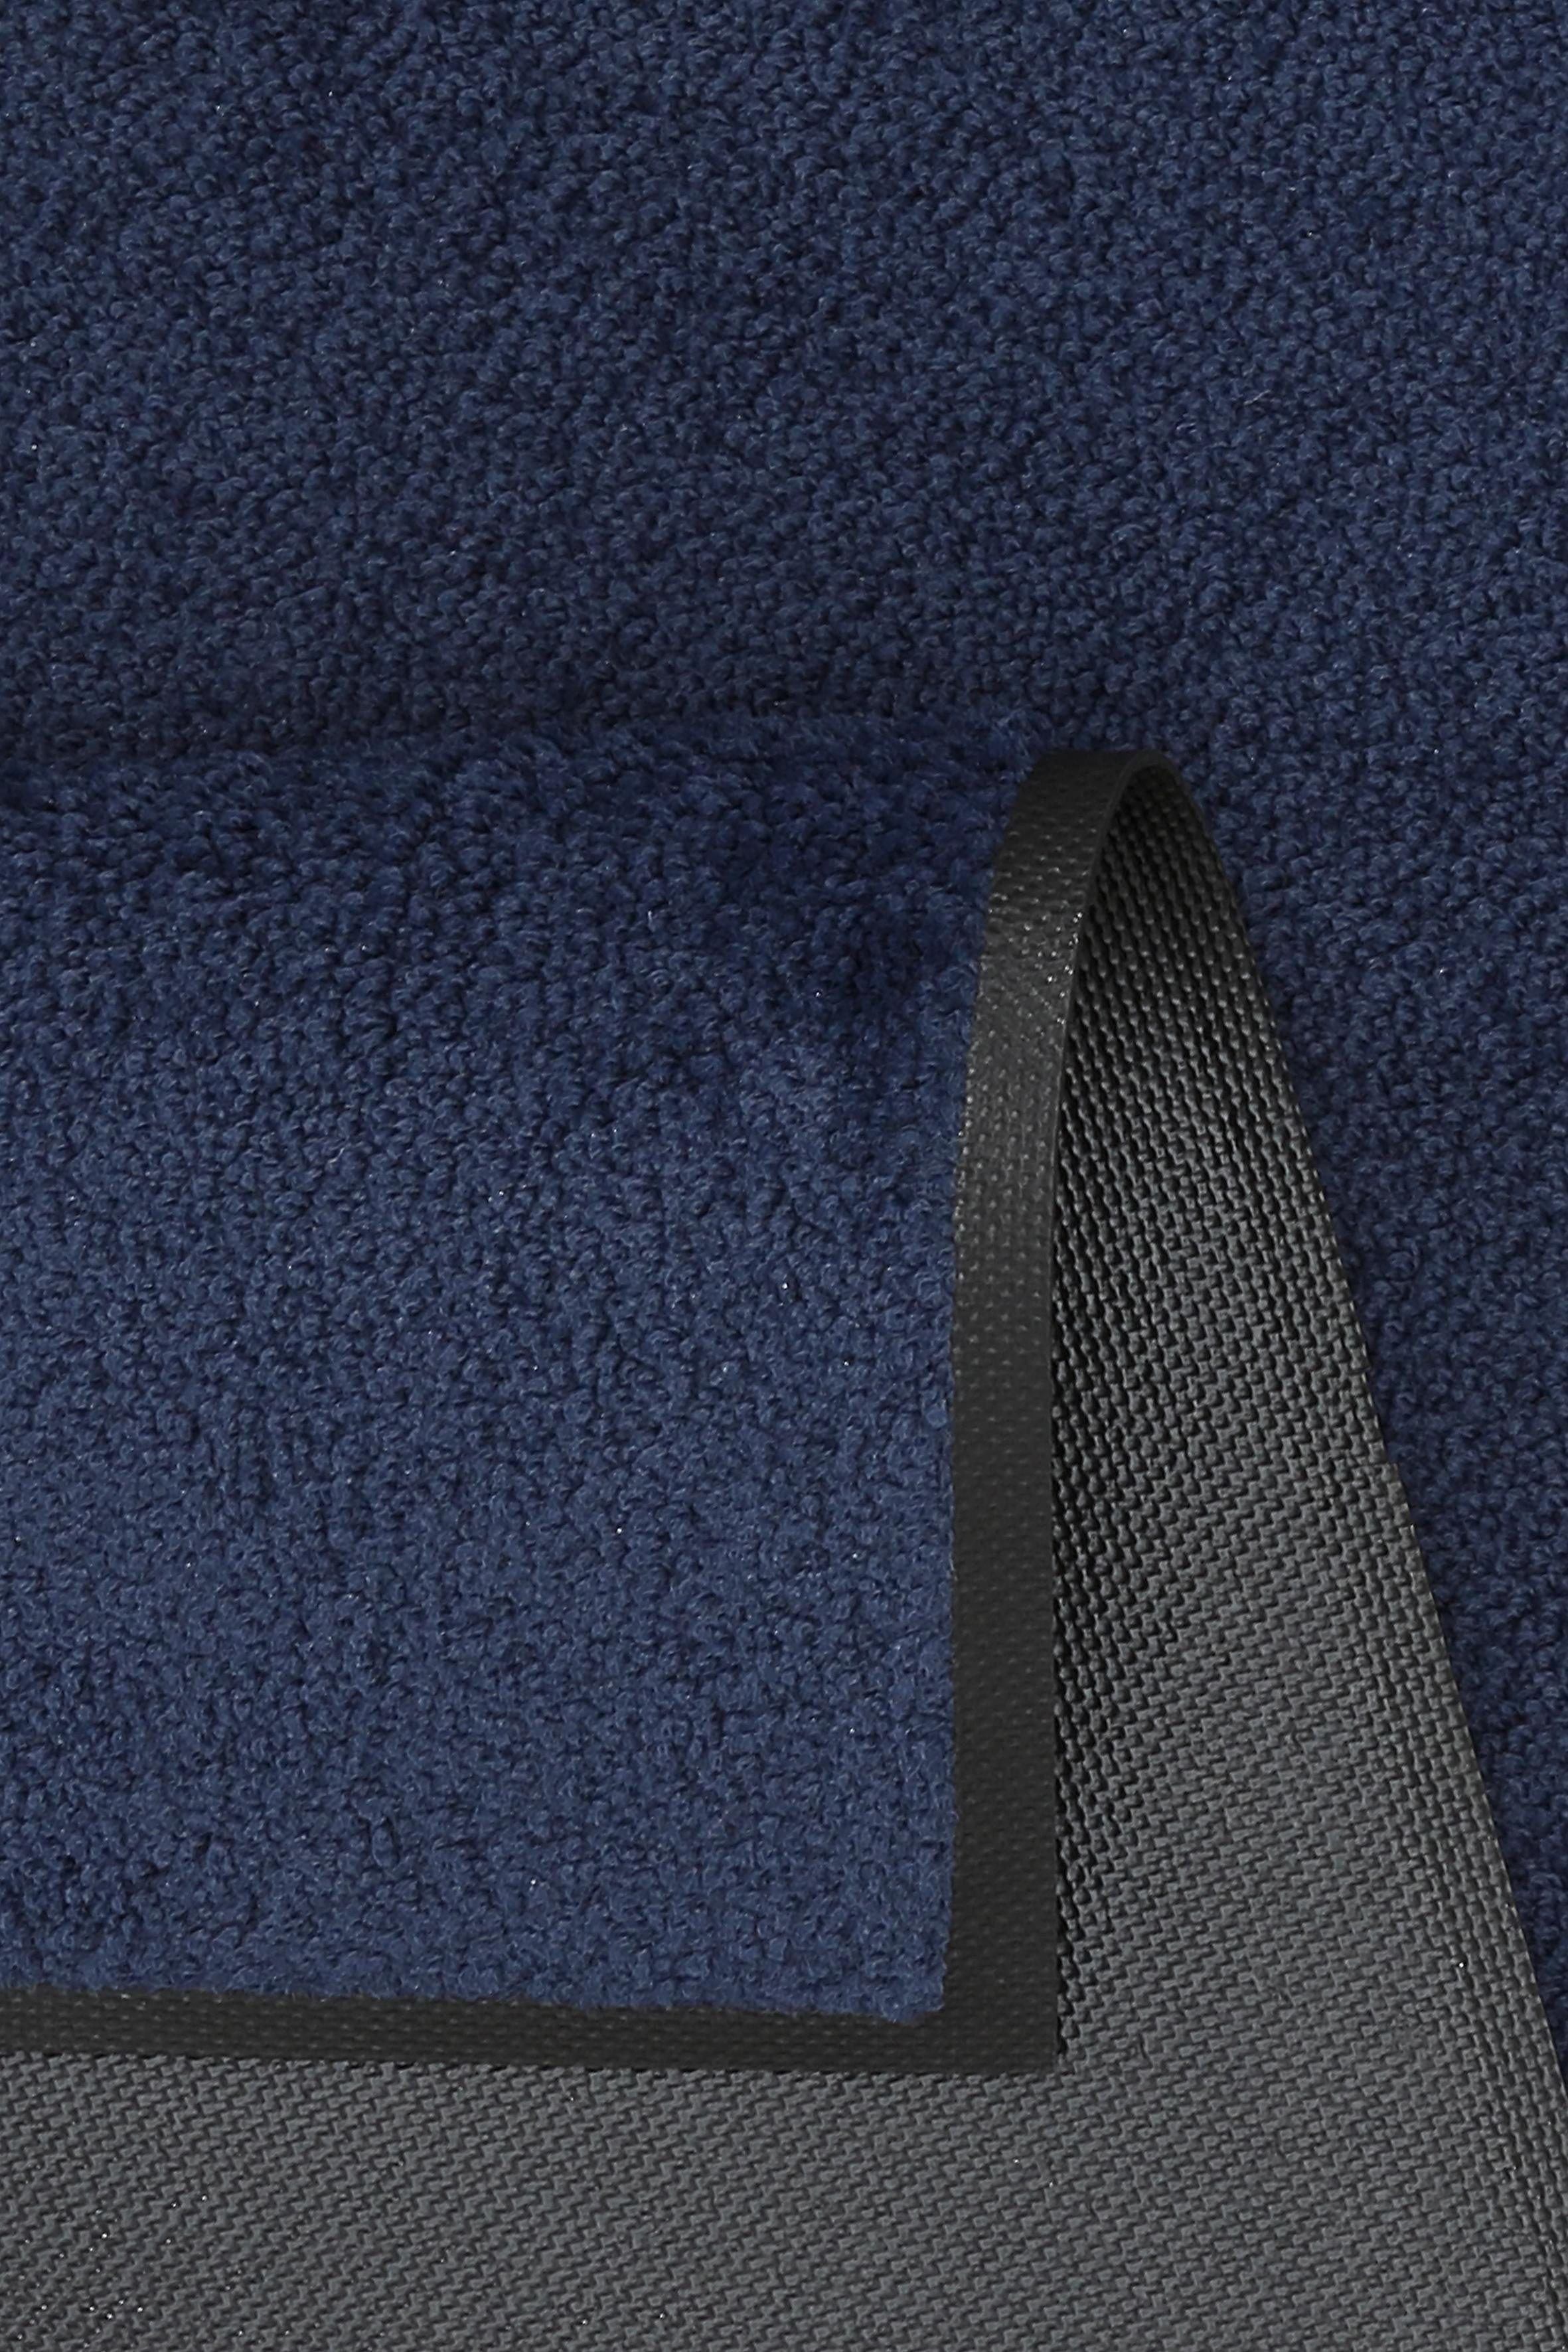 Läufer Original Uni, wash+dry by Kleen-Tex, rutschhemmend Schmutzfangläufer, Schmutzfangteppich, 9 Schmutzmatte, Höhe: marineblau rechteckig, mm